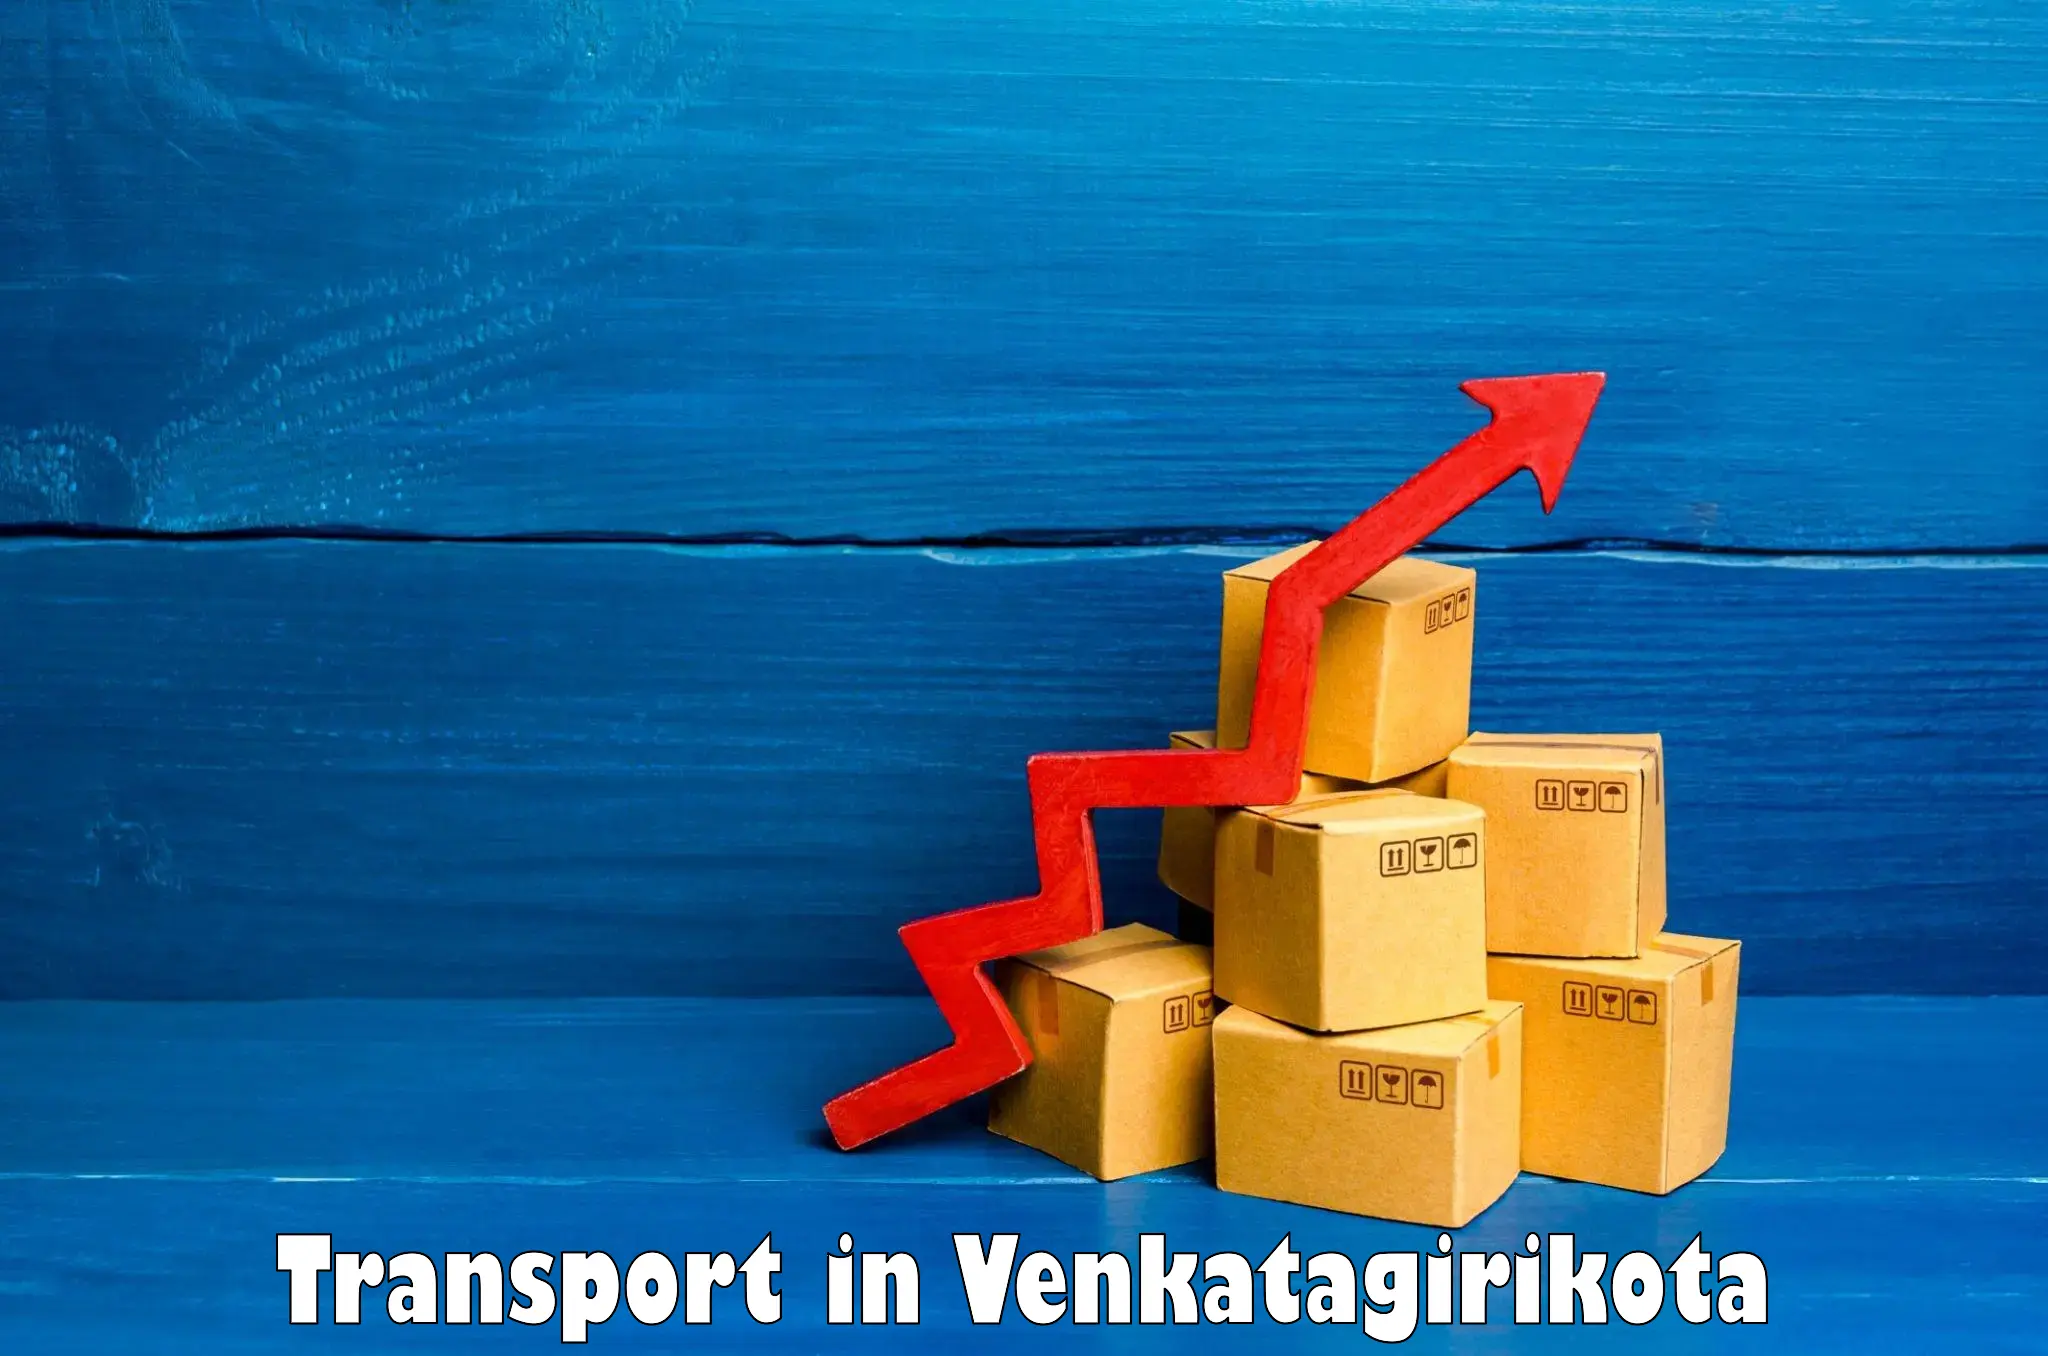 India truck logistics services in Venkatagirikota